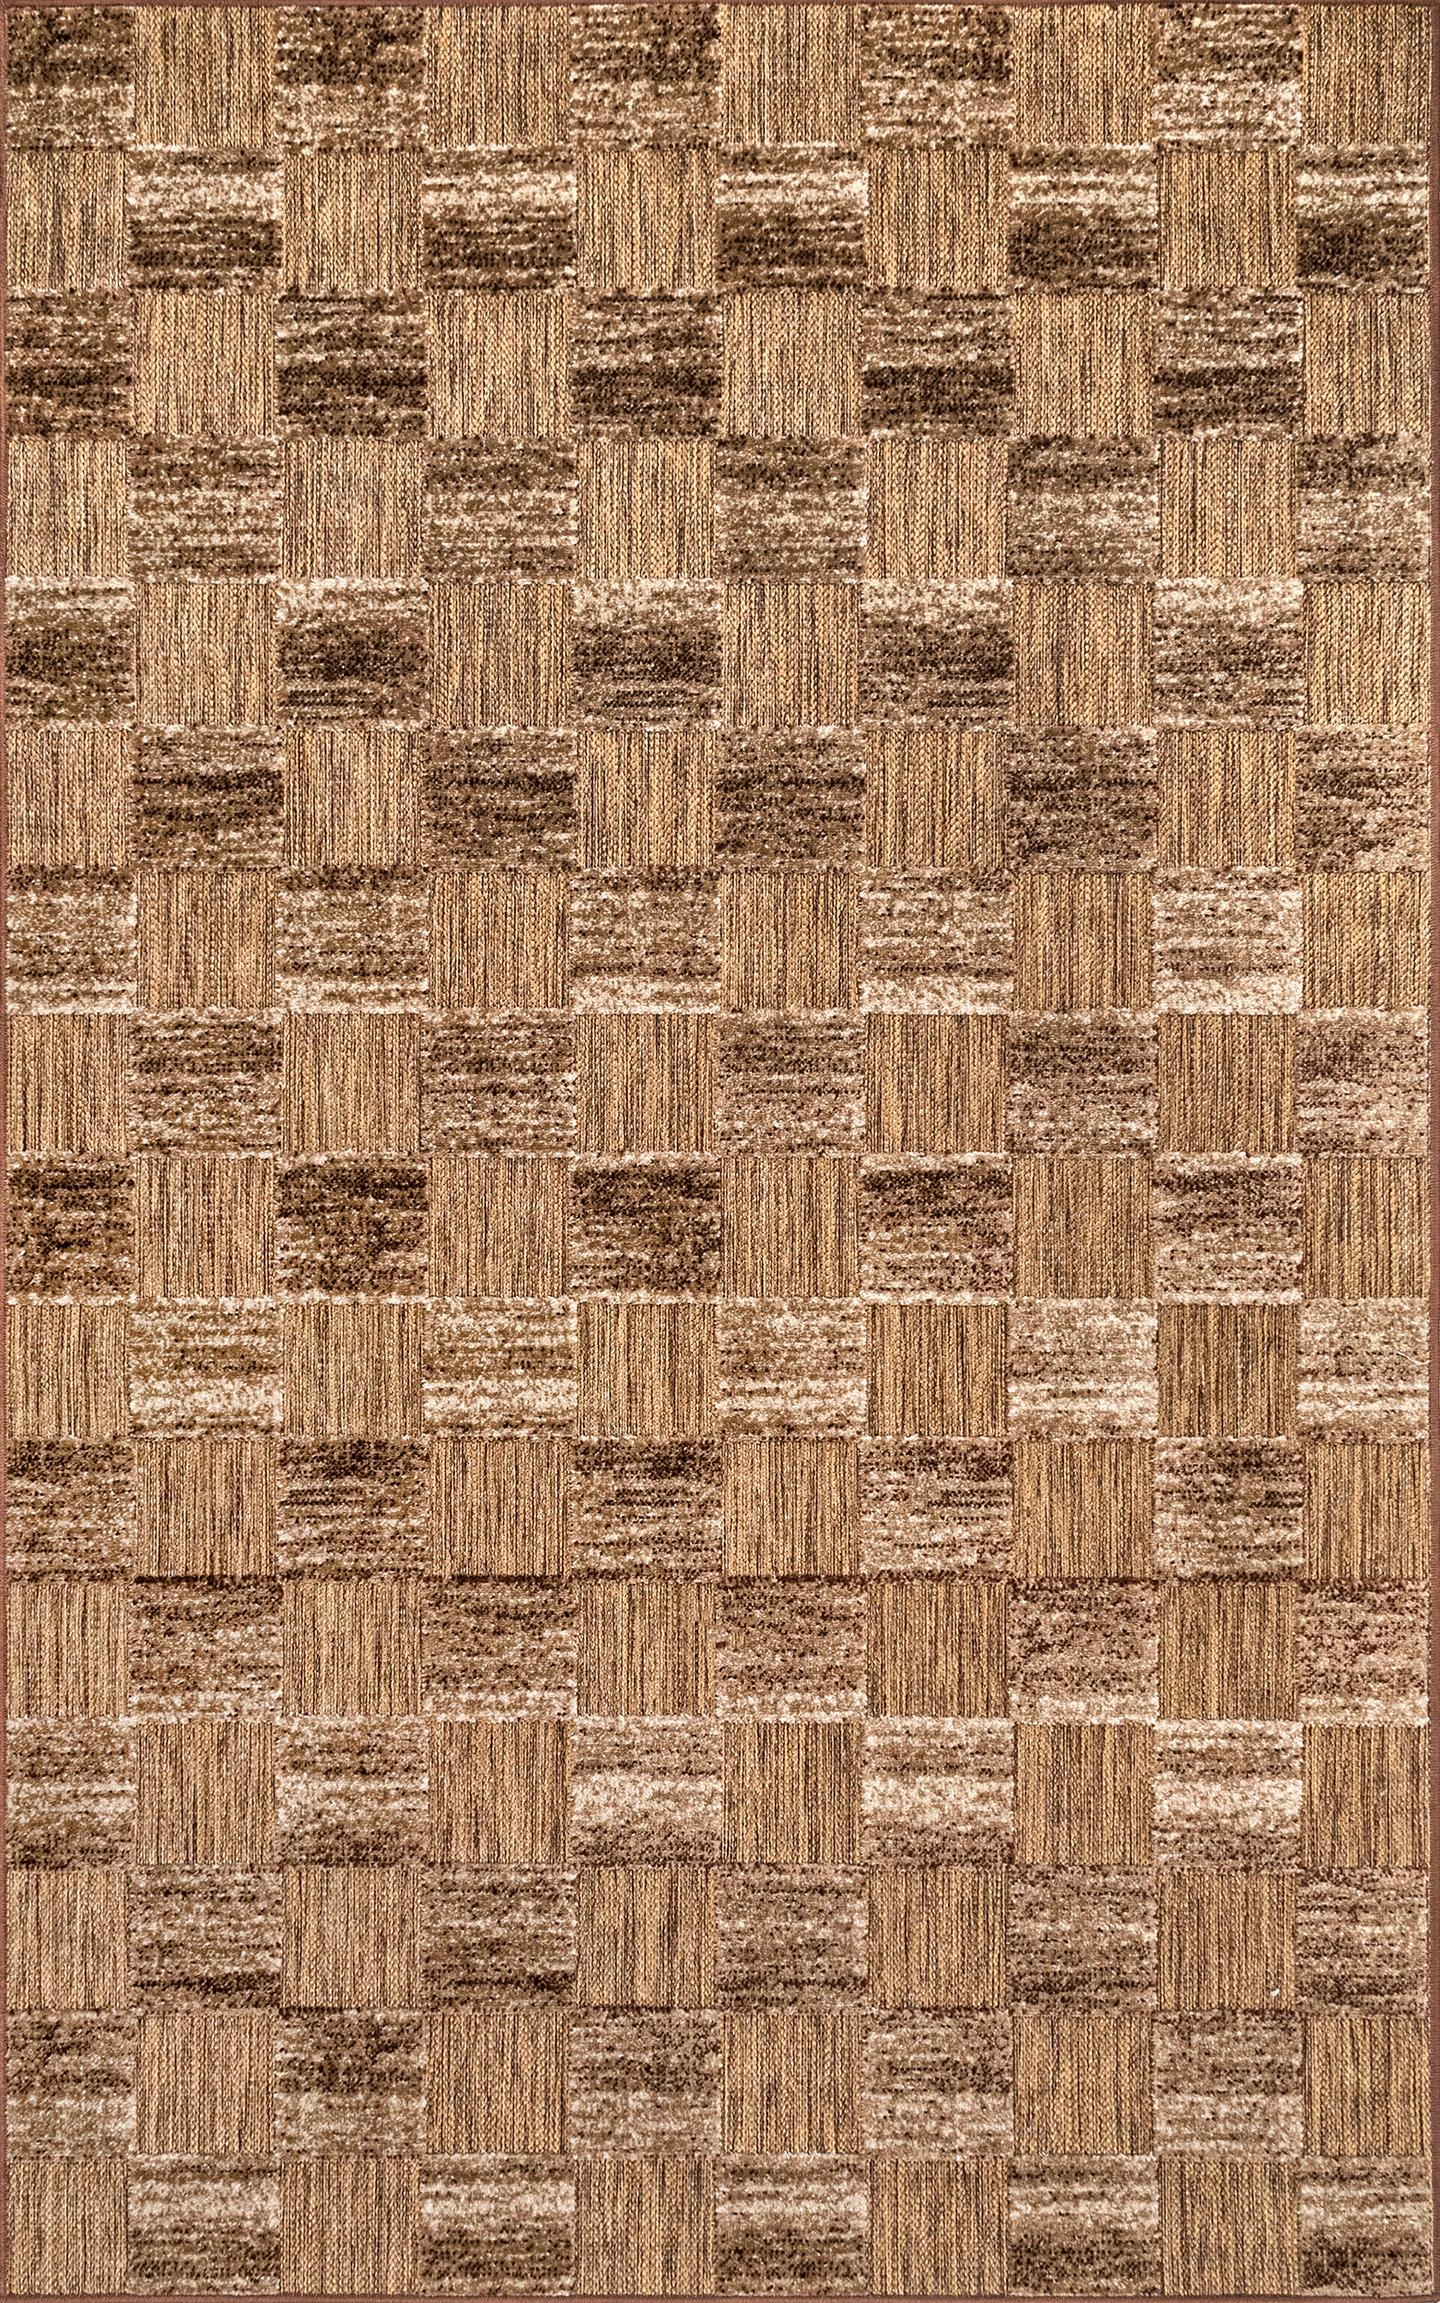 Mckinley Textured Tiles Indoor/Outdoor Area Rug - Image 1